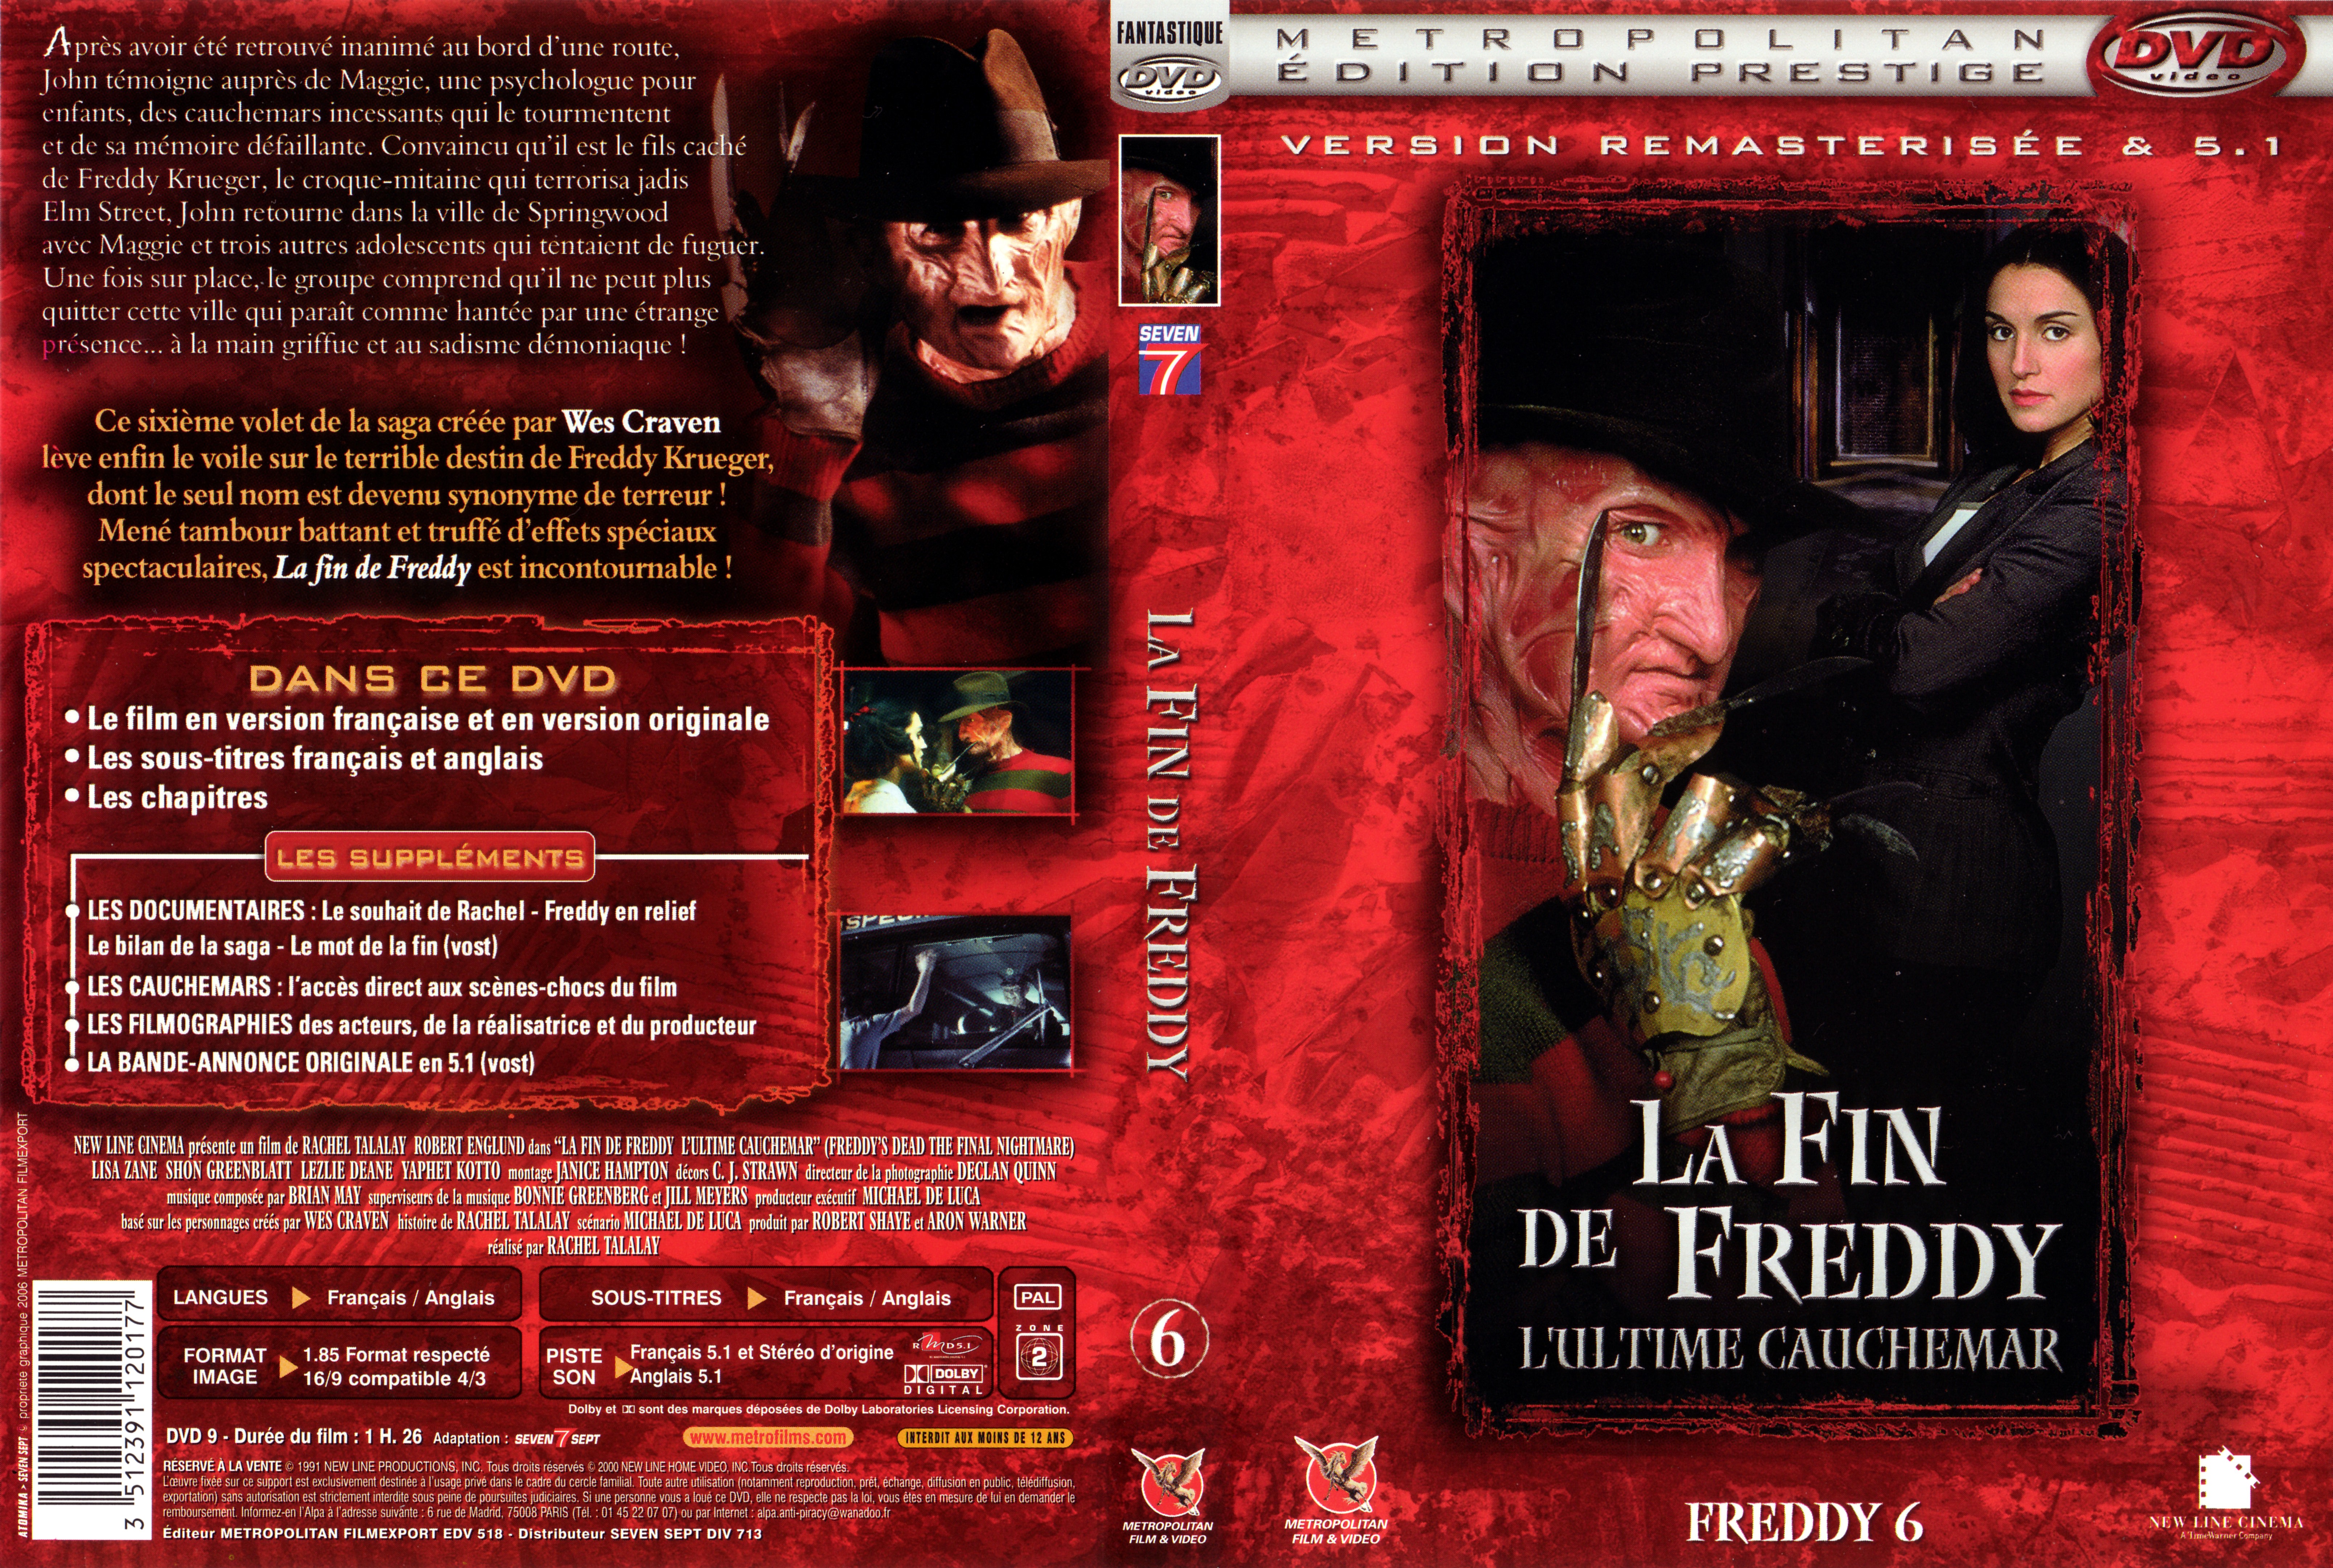 Jaquette DVD Freddy 6 La fin de Freddy